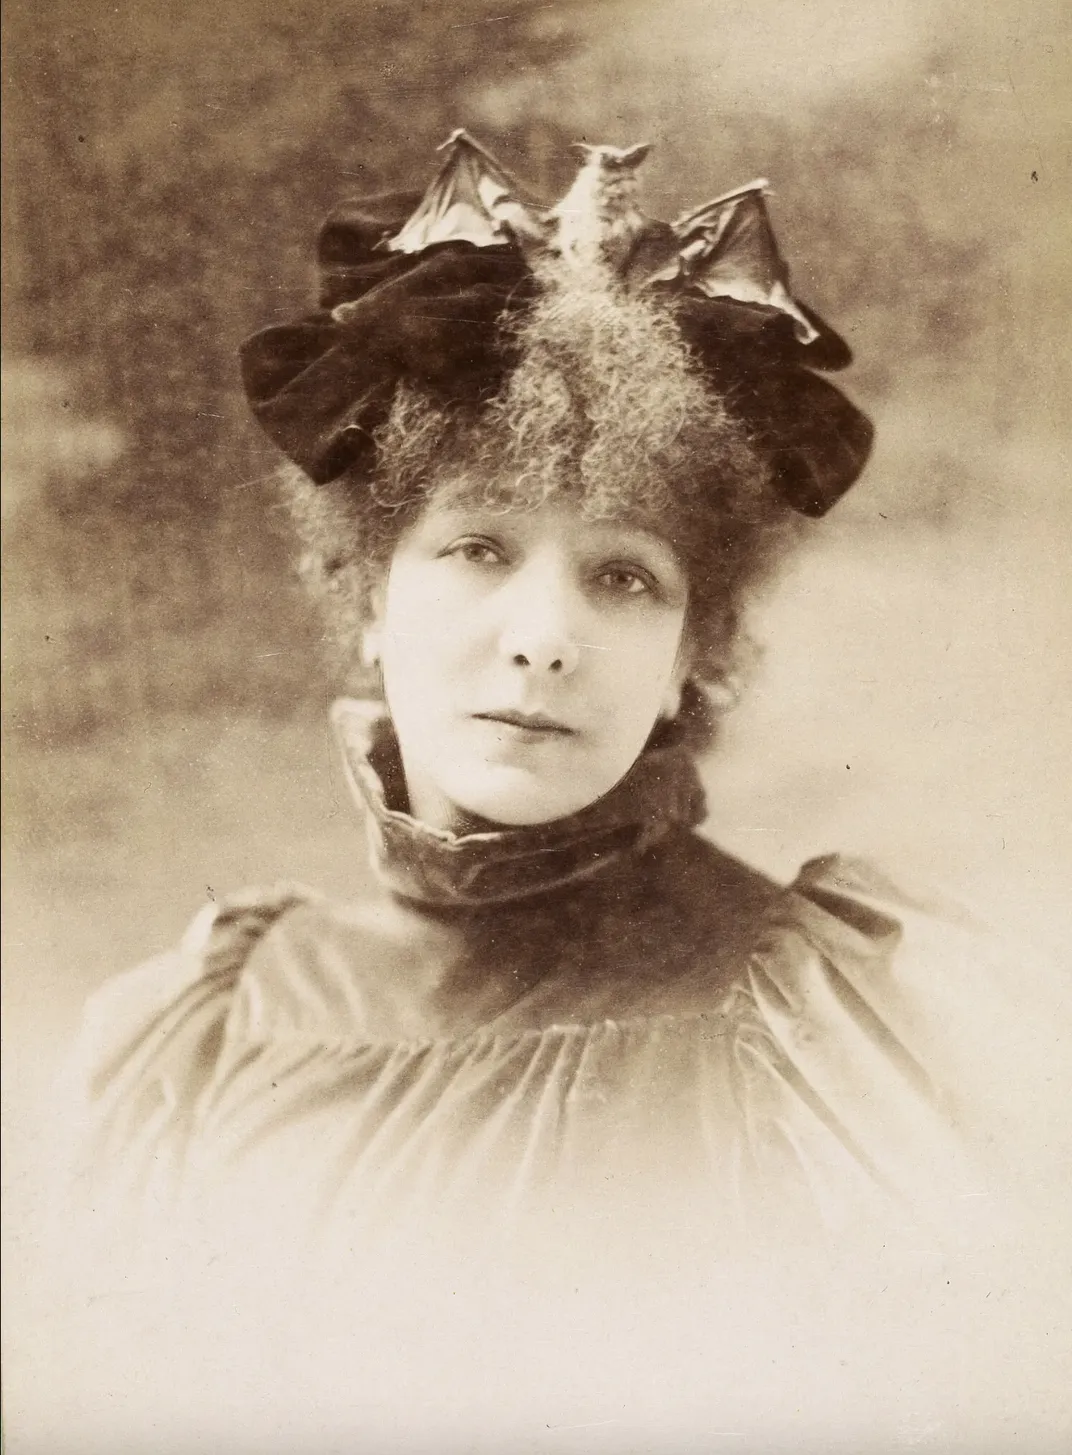 Bernhardt wearing a bat hat around 1899 or 1900